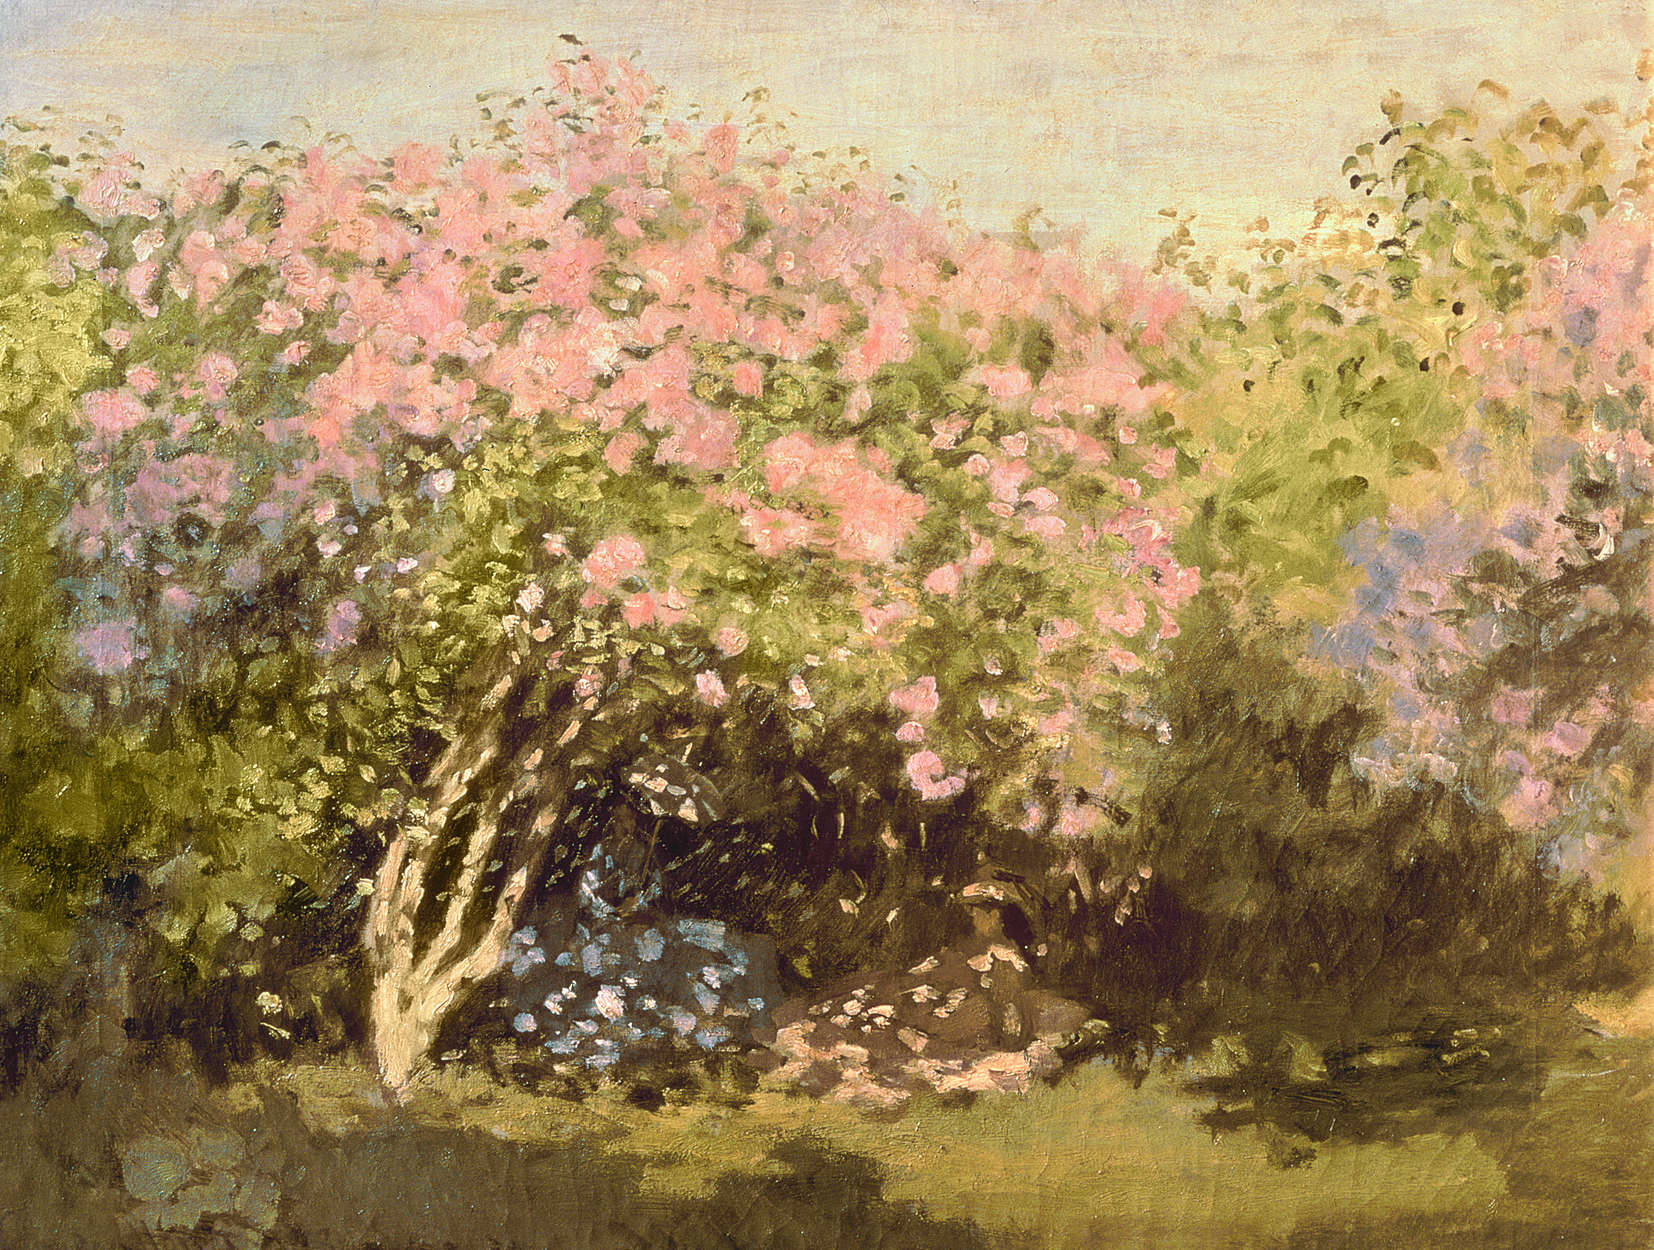             Fotomurali "Lillà in fiore al sole" di Claude Monet
        